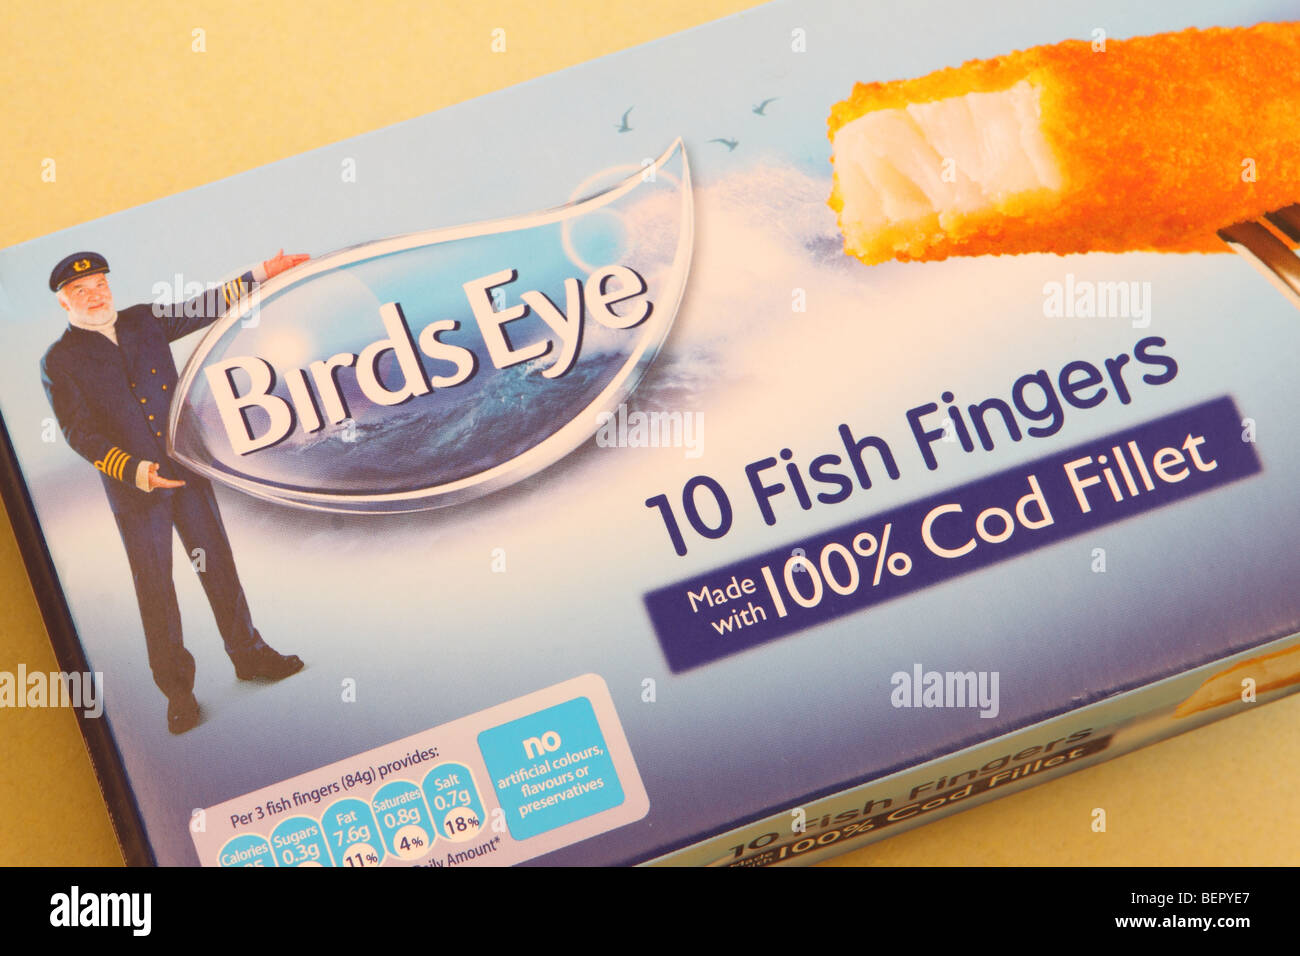 Birds Eye cibi congelati i bastoncini di pesce il pacchetto logo design e confezionamento Foto Stock